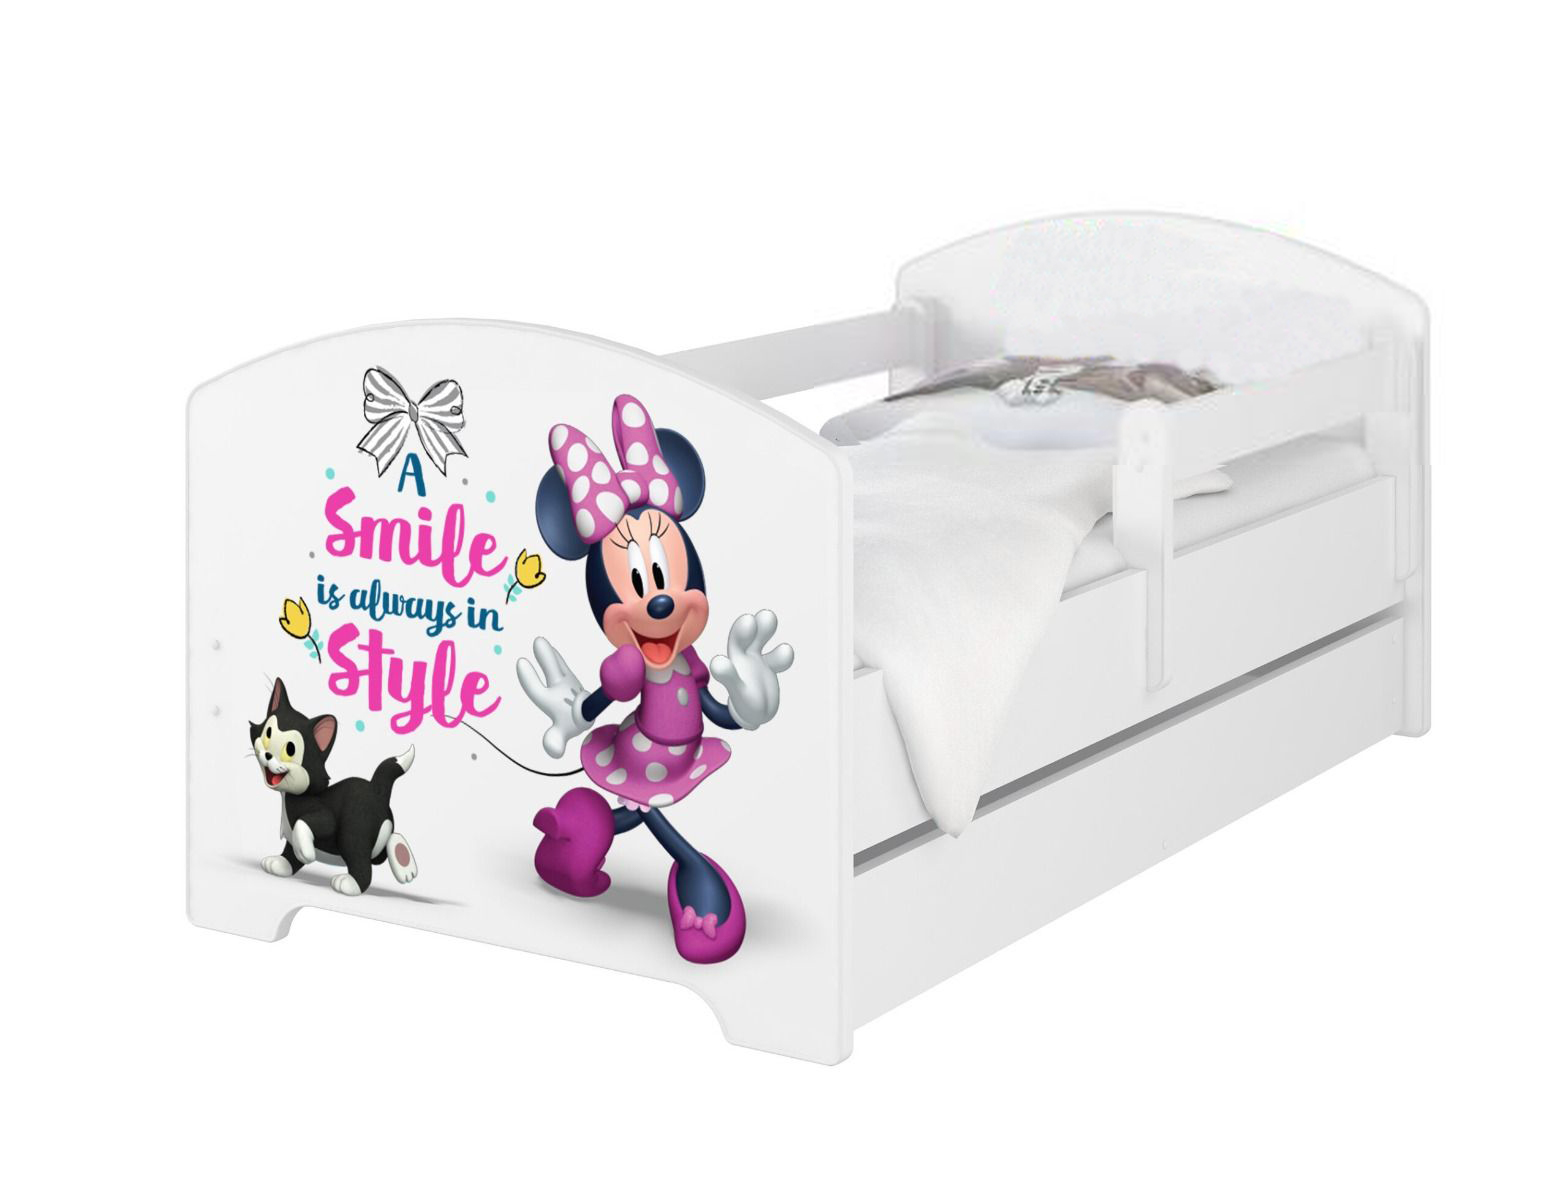 Disney Minnie3 egeres Ágy 140 X 70 leesésgátlós AJÁNDÉK MATRACCAL, ágyneműtartóval